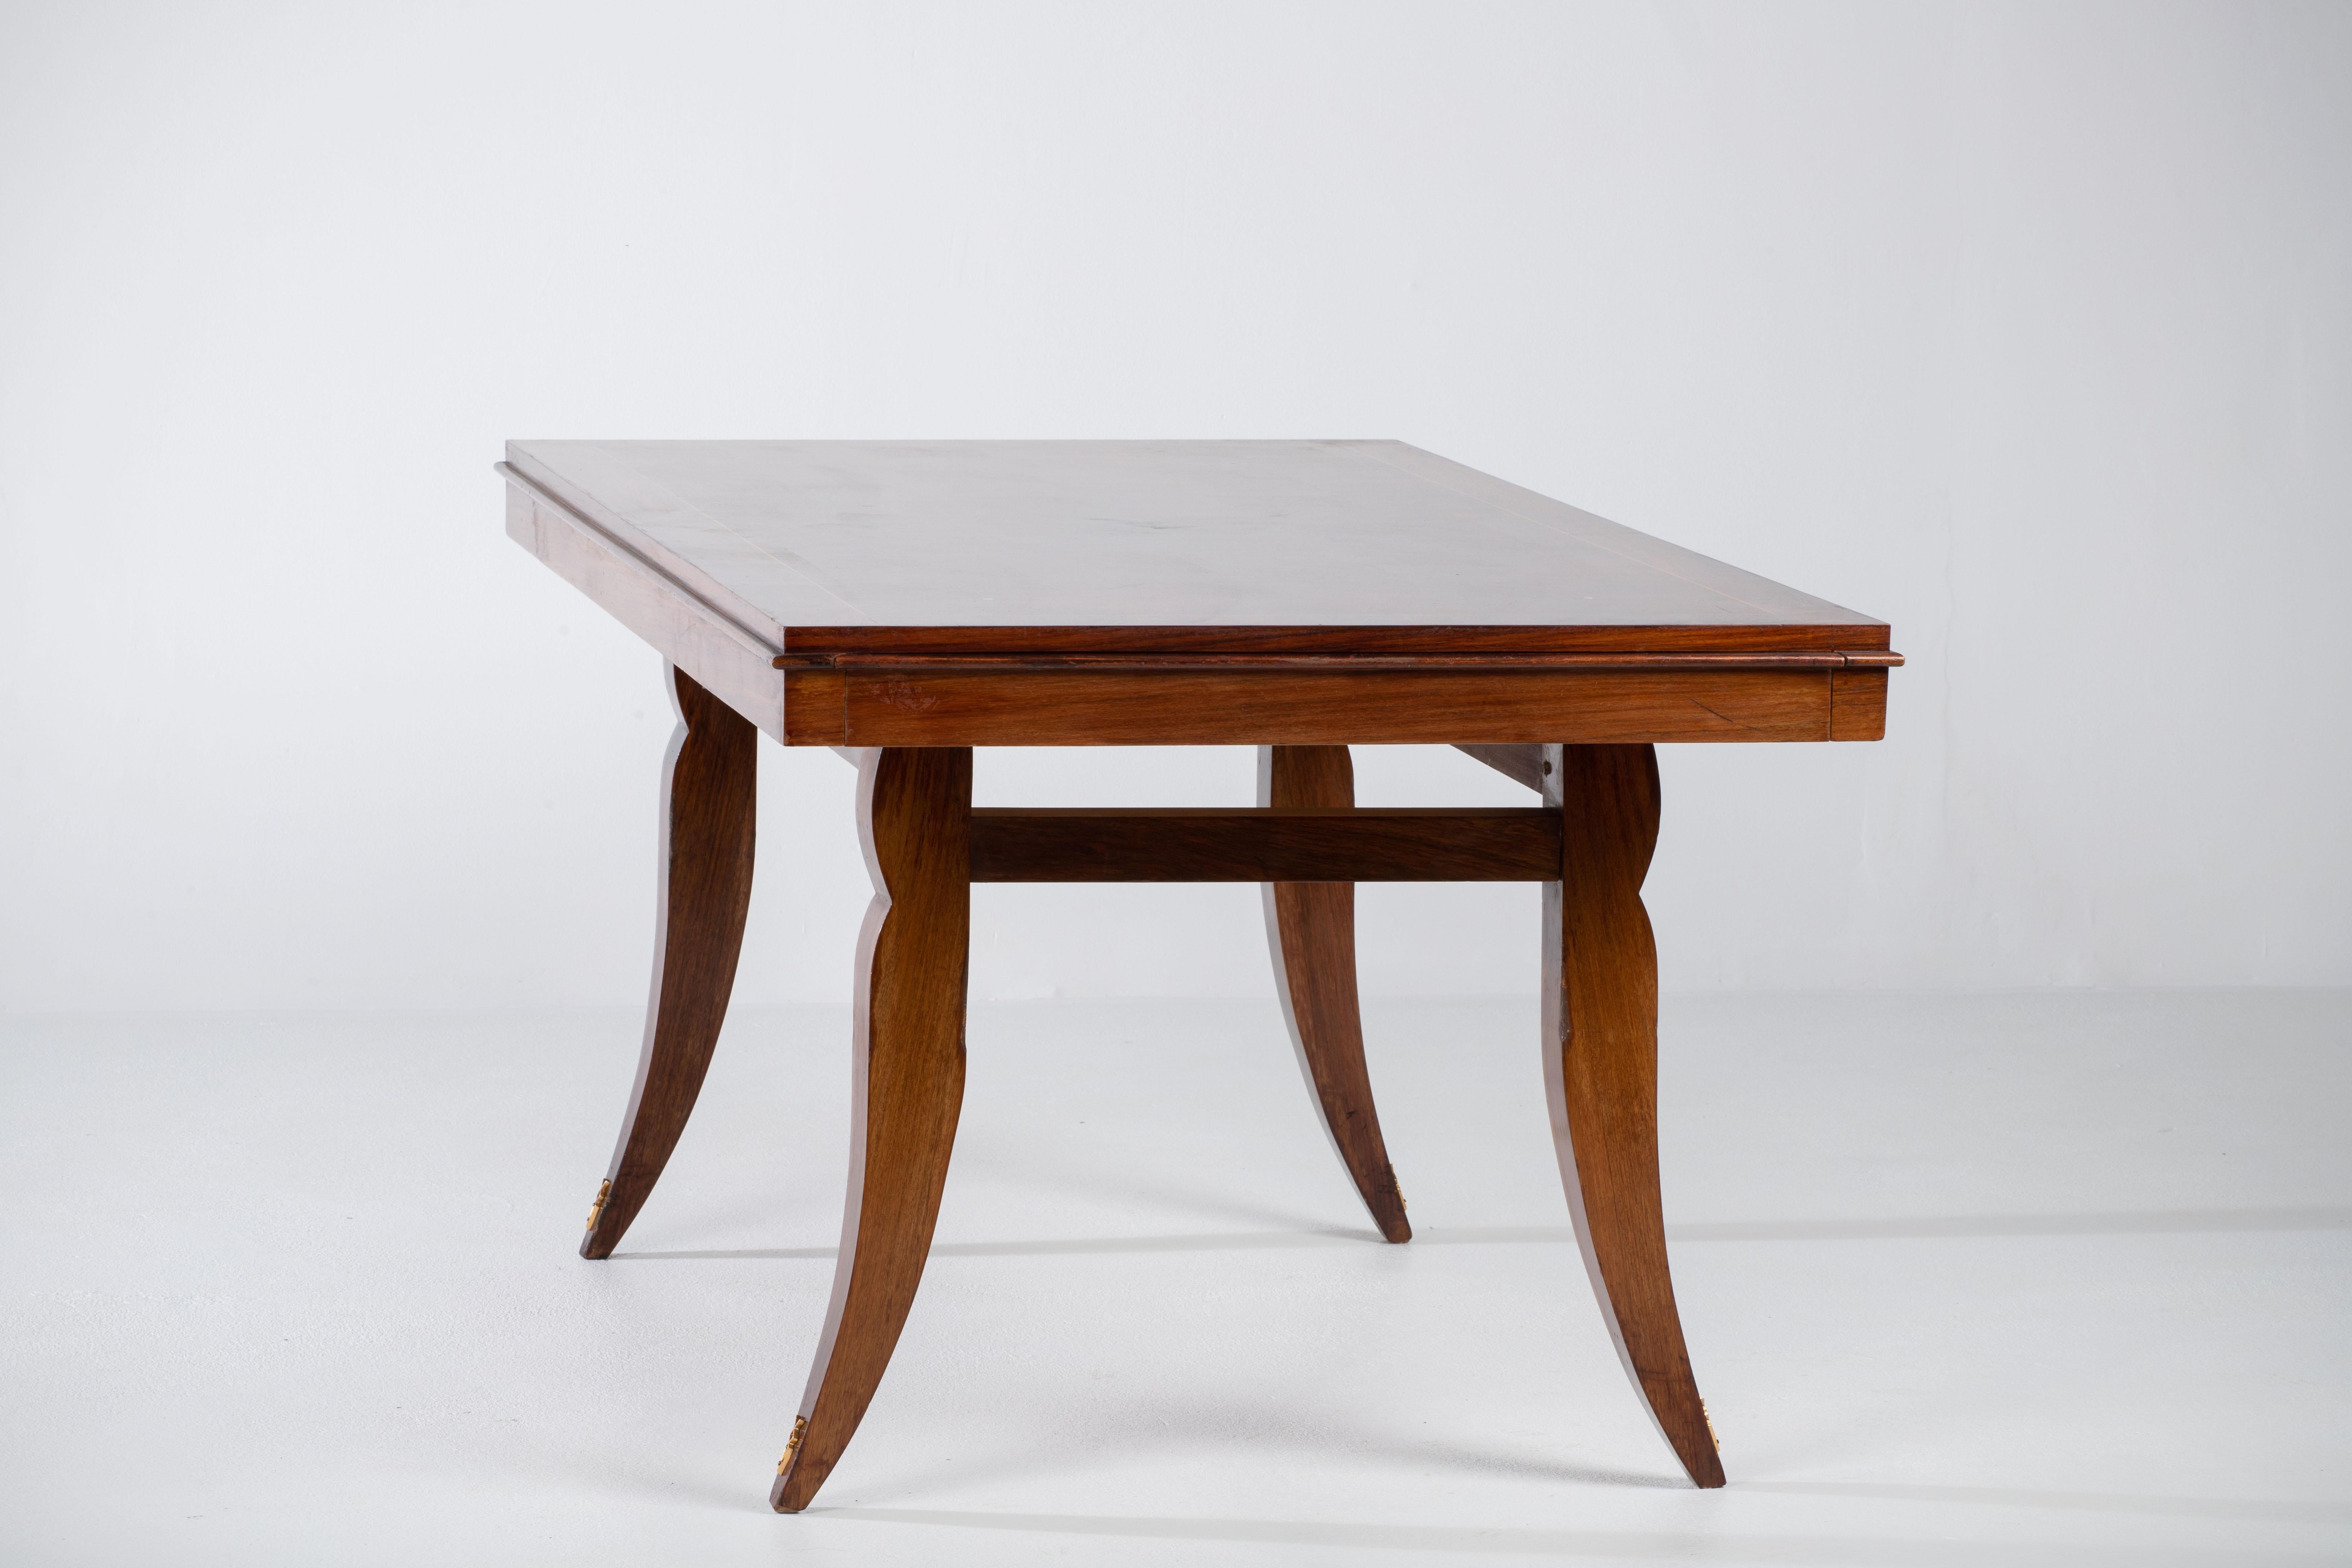 Esstisch, Makassar, Frankreich, 1940er Jahre.

Majestätischer Mitteltisch aus Makassar. Dieser Art-Déco-Tisch zeigt große Handwerkskunst. Der Sockel und die Beine sind wunderschön detailliert. Dieser Tisch hat ein elegantes Aussehen. Dieses Design